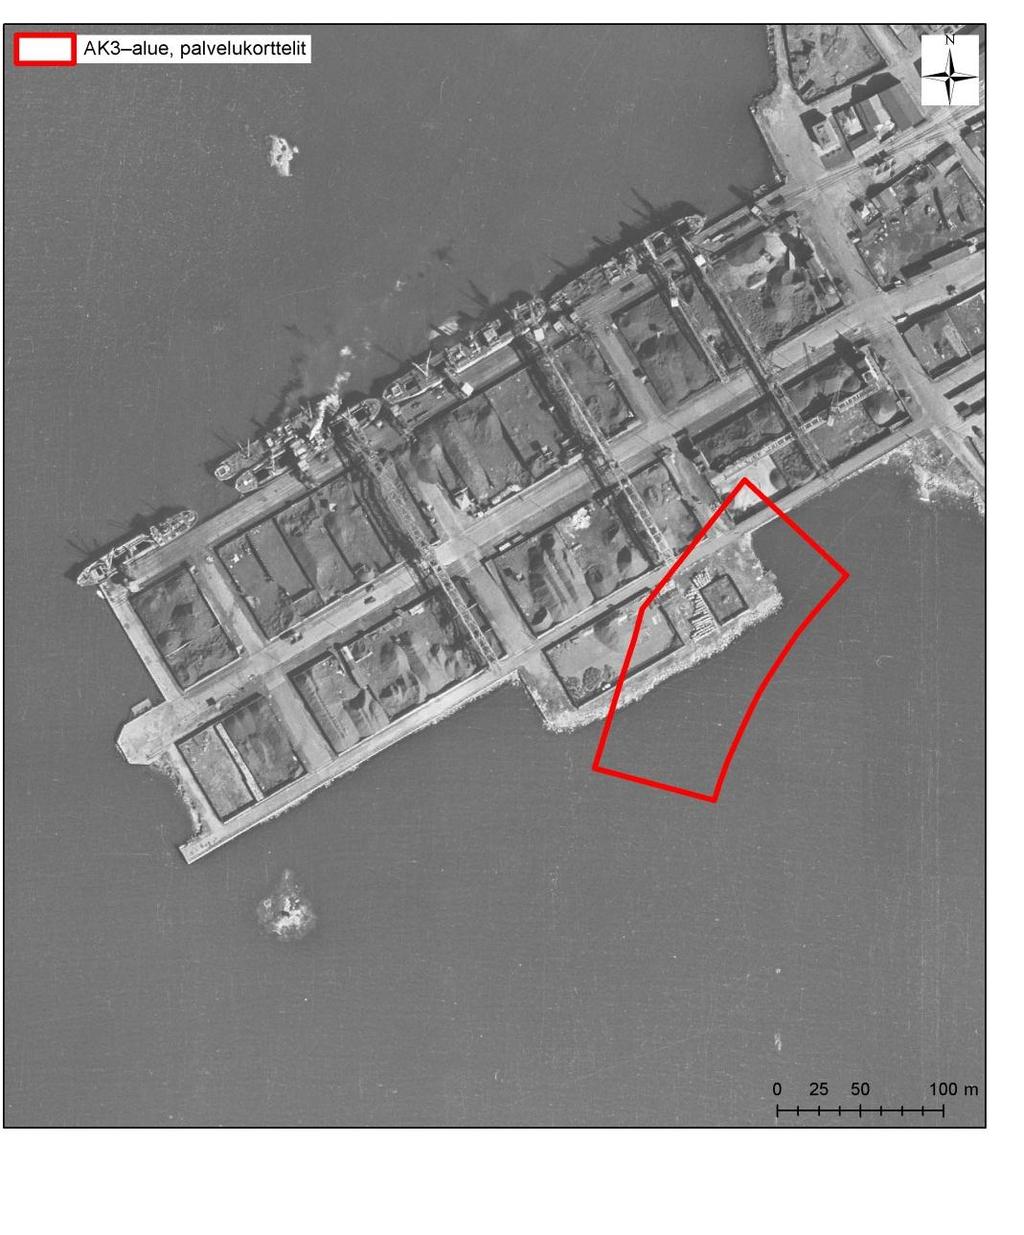 TUTKIMUSRAPORTTI 2 2.4 Alueen käyttöhistoria Palvelukortteleiden alue on ollut historiansa aikana pääosin satamakäytössä.